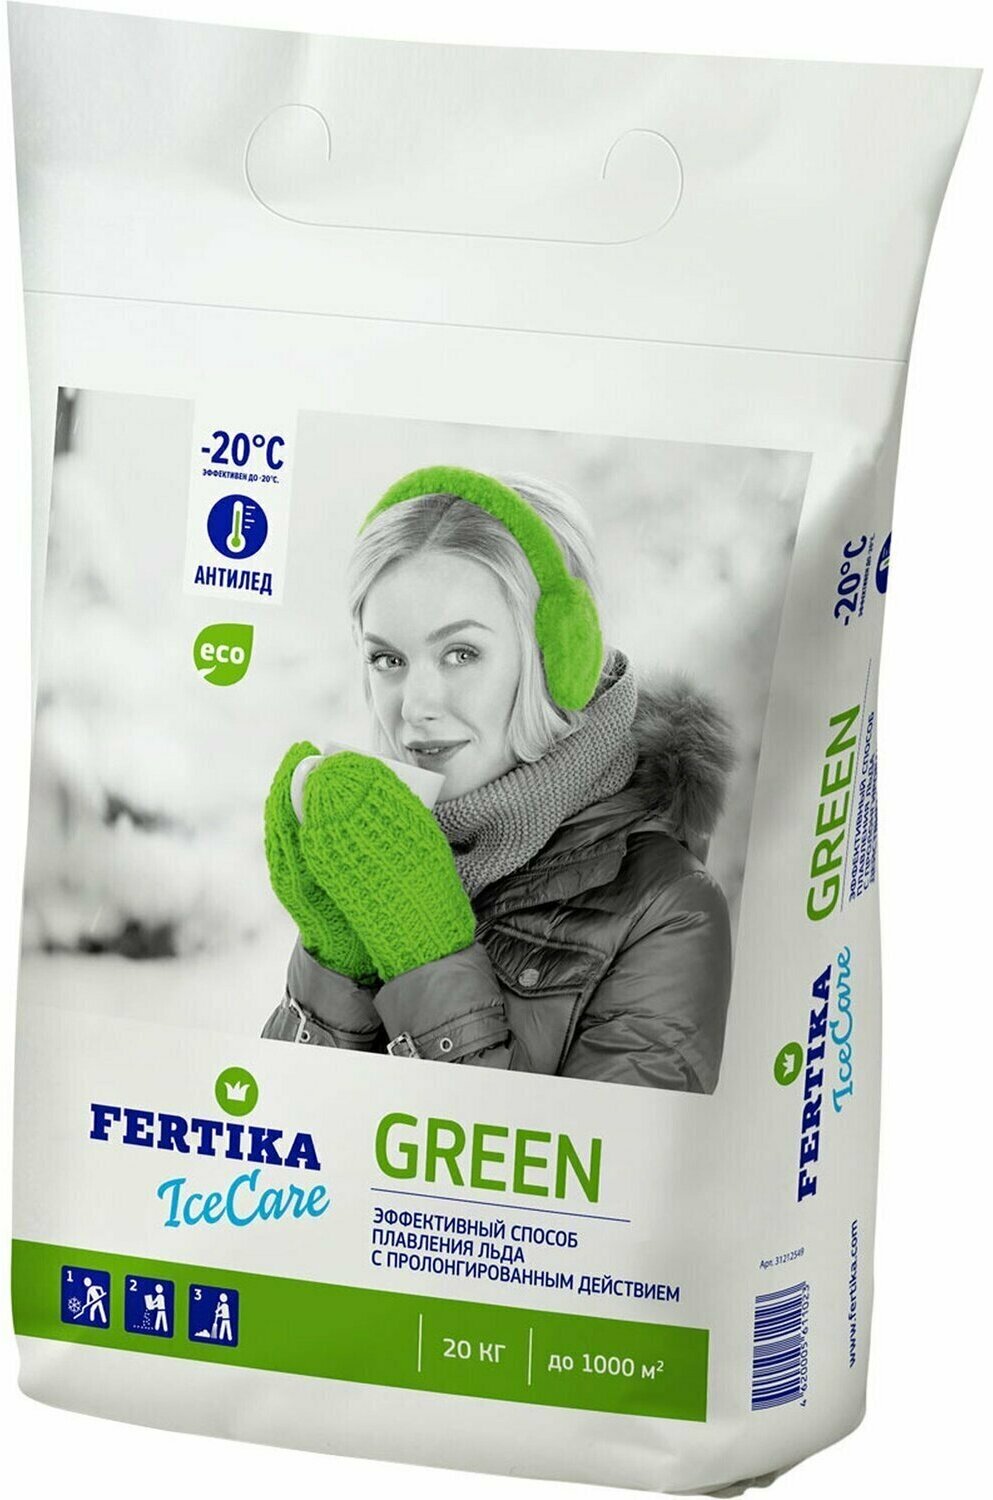 FERTIKA Противогололёдный реагент Fertika IceCare Green -20С 20 кг